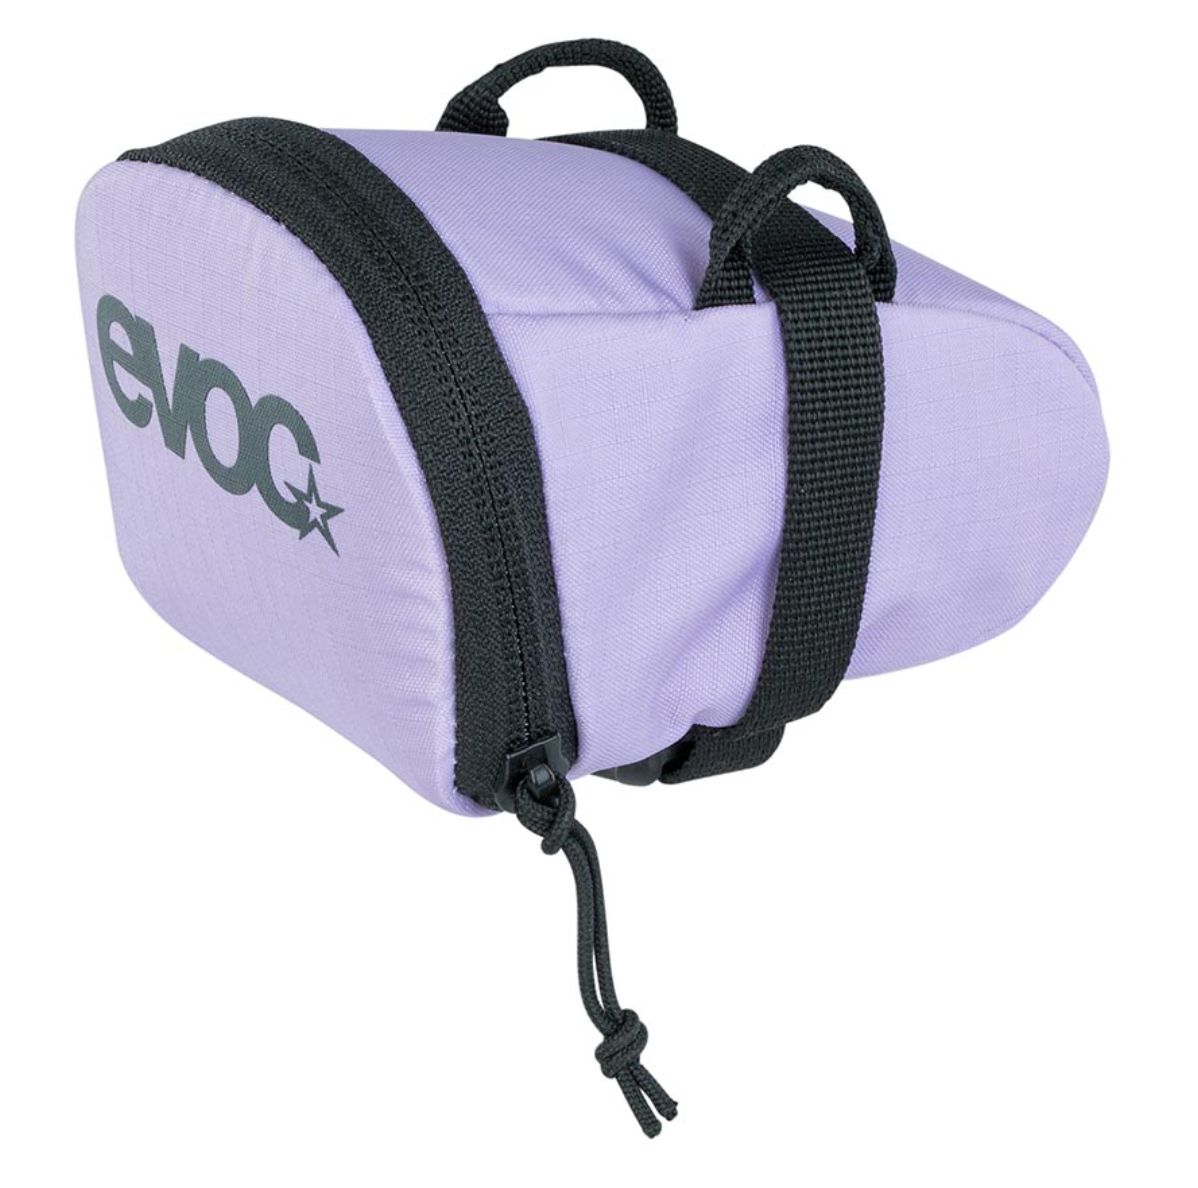 EVOC Saddle/Seat Bag Lavender Size Small .3L